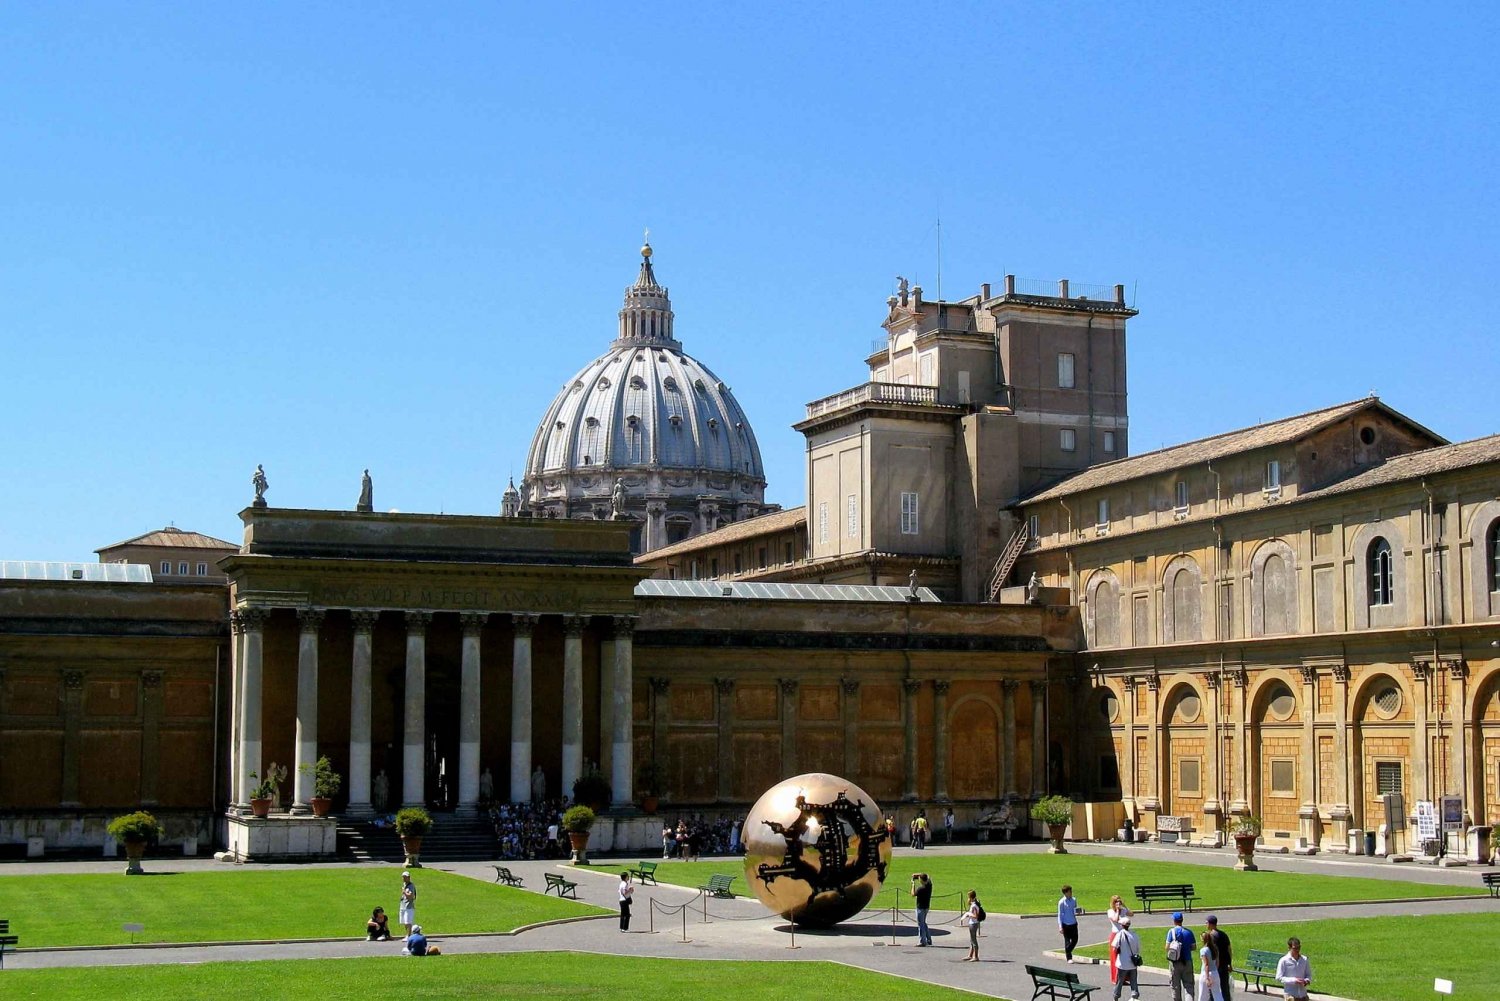 Rome: Vatican Museums & Sistine Chapel Skip-the-Line Tour